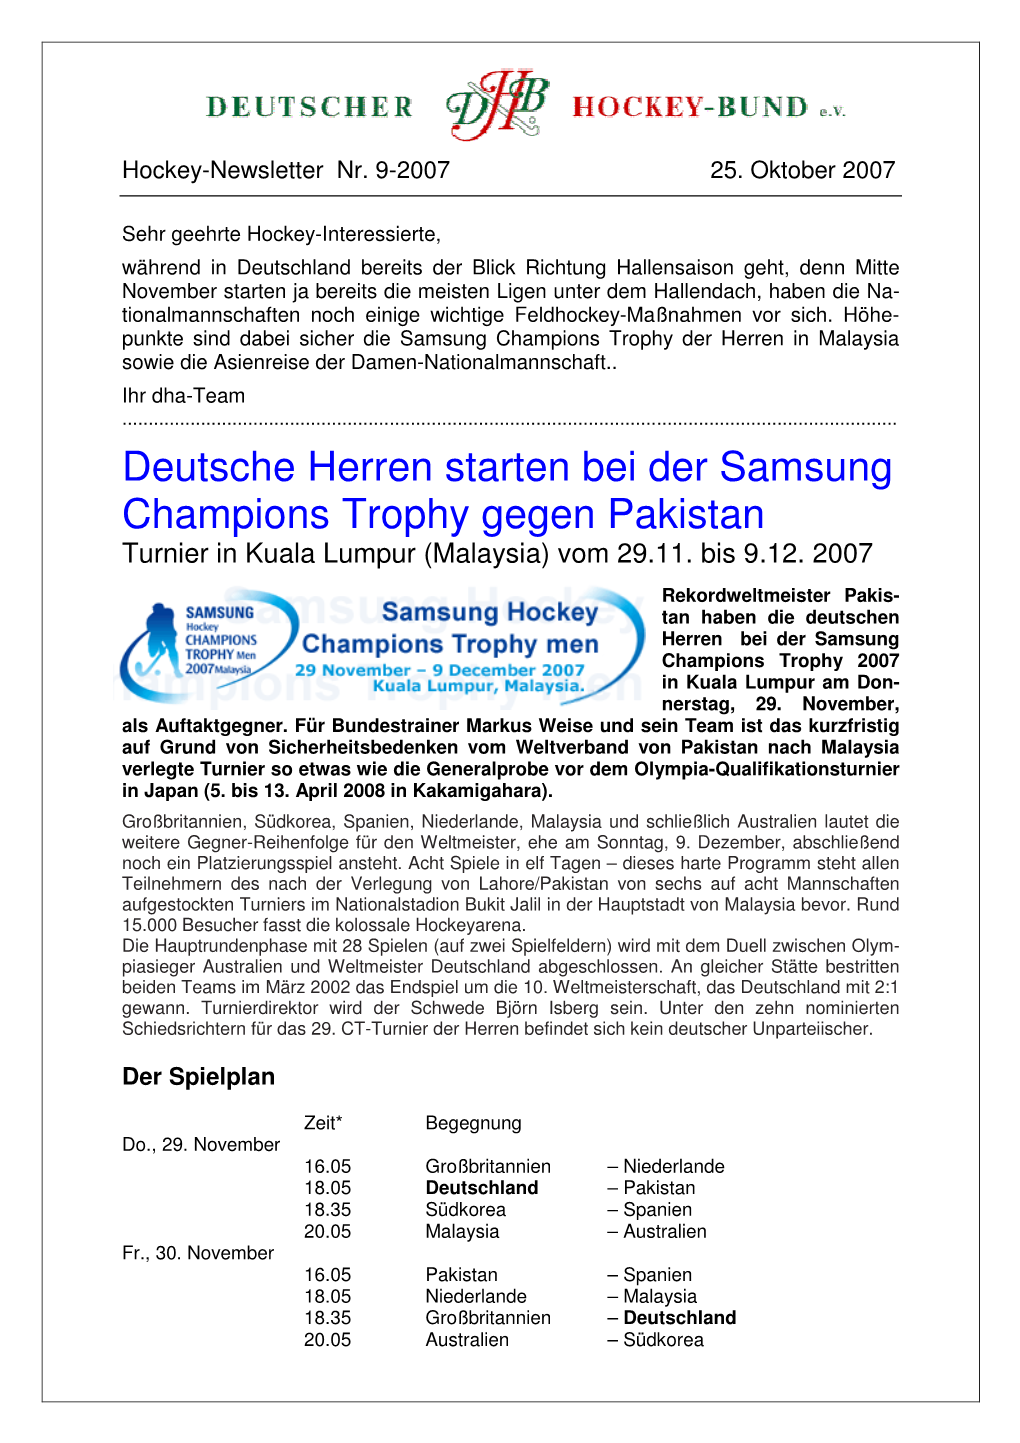 Deutsche Herren Starten Bei Der Samsung Champions Trophy Gegen Pakistan Turnier in Kuala Lumpur (Malaysia) Vom 29.11